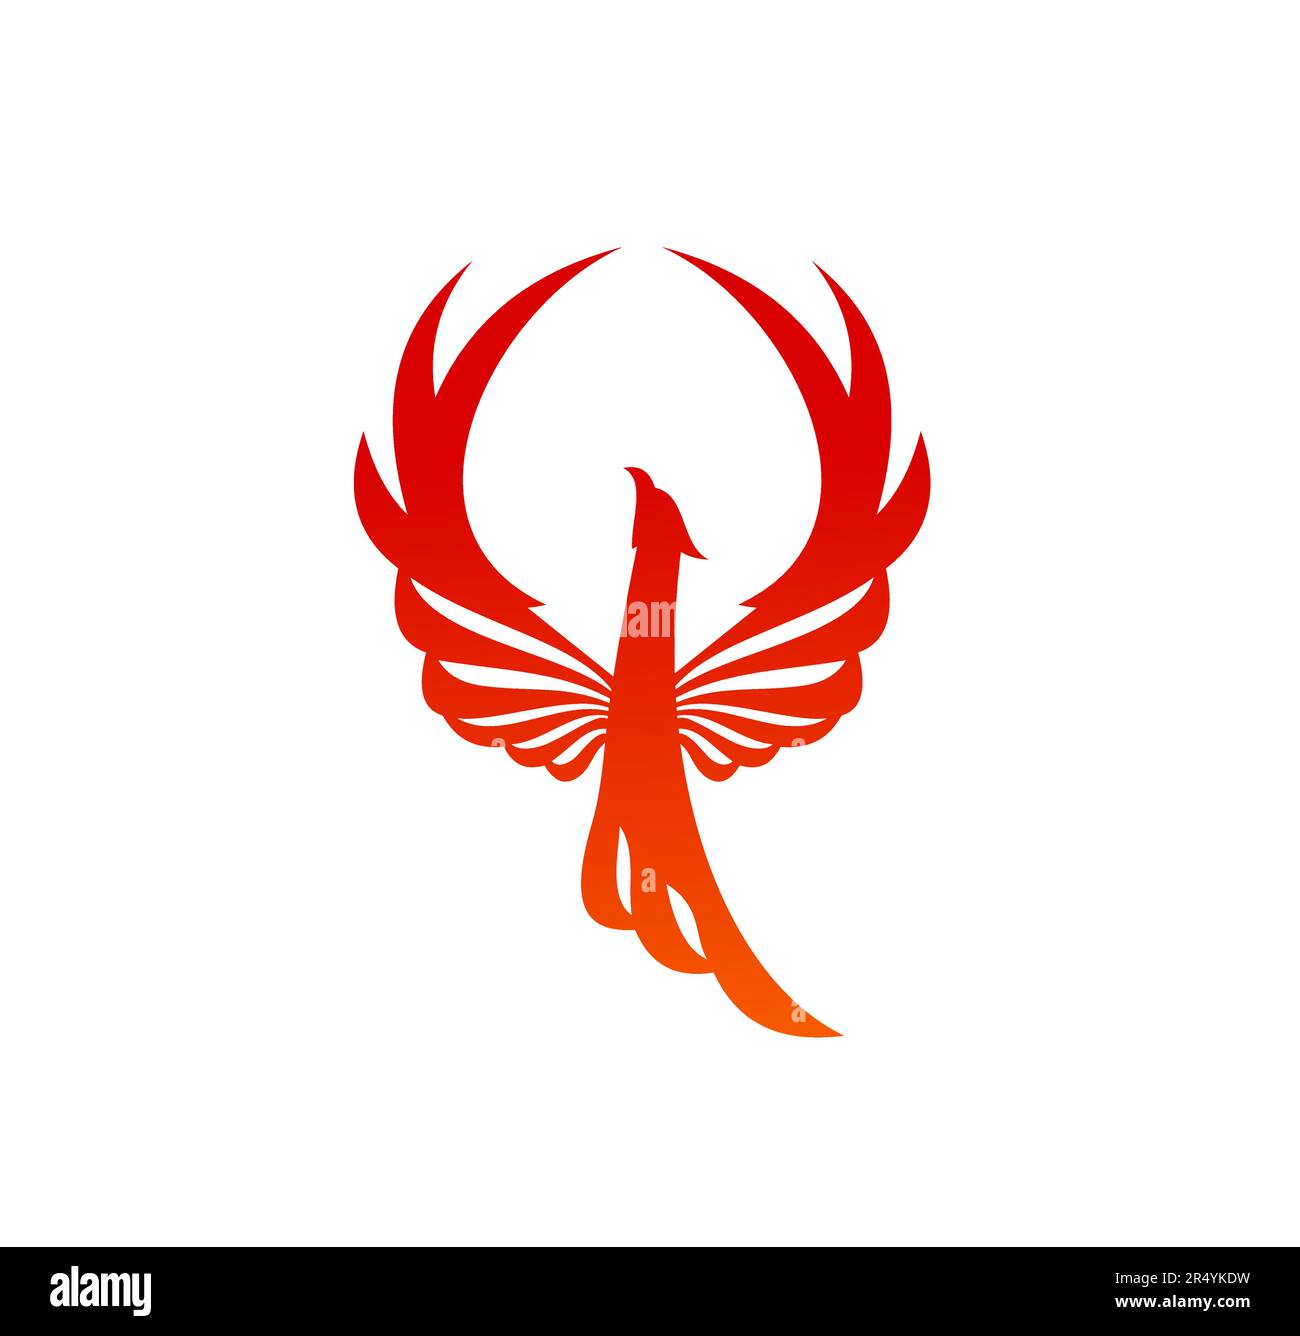 Oiseau de Phoenix avec silhouette de vecteur de flammes de feu. firebird brûlant, fenix ou phoenix fantasy oiseau avec des ailes surélevées. Aigle ou faucon abstrait avec plumes flamboyantes, ailes et emblème héraldique de queue Illustration de Vecteur